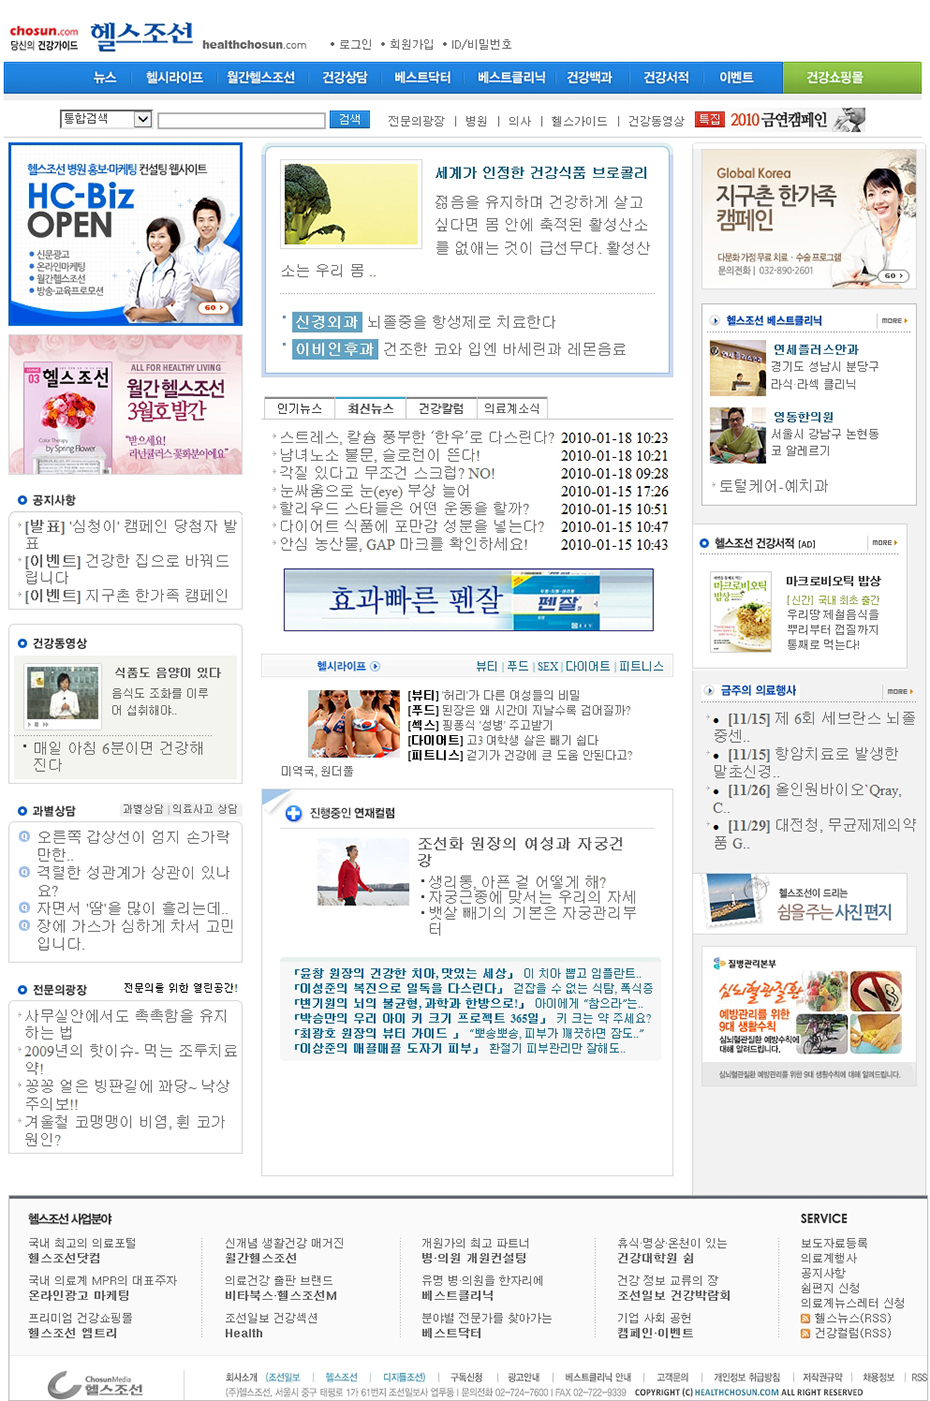 2009년 헬스조선닷컴 